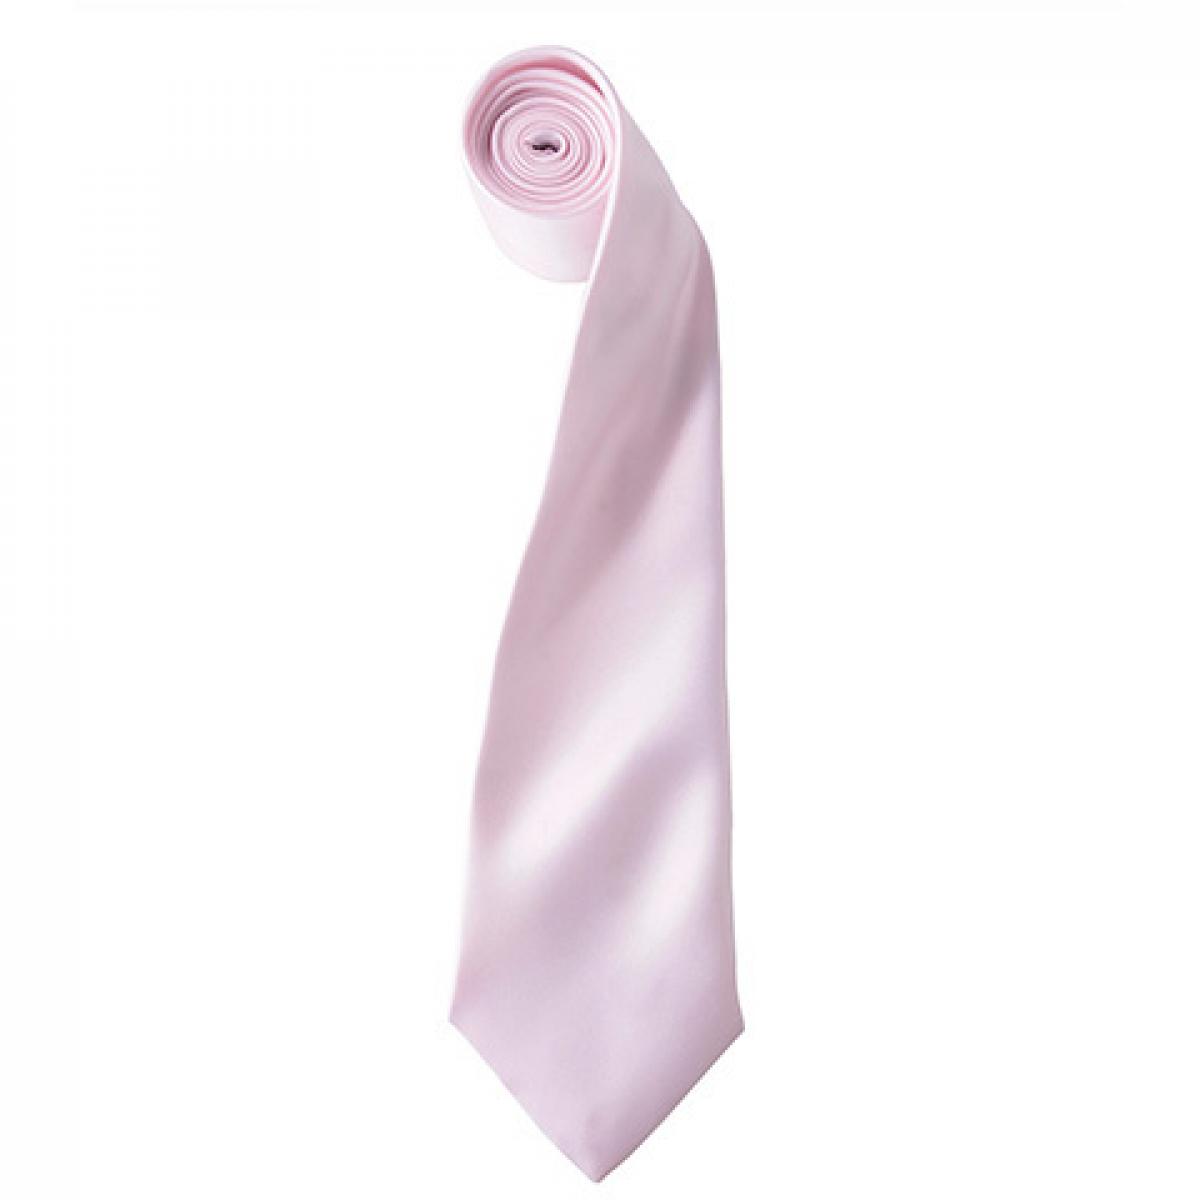 Hersteller: Premier Workwear Herstellernummer: PR750 Artikelbezeichnung: Satin Tie ´Colours´ / 144 x 8,5 cm Farbe: Pink (ca. Pantone 1895)